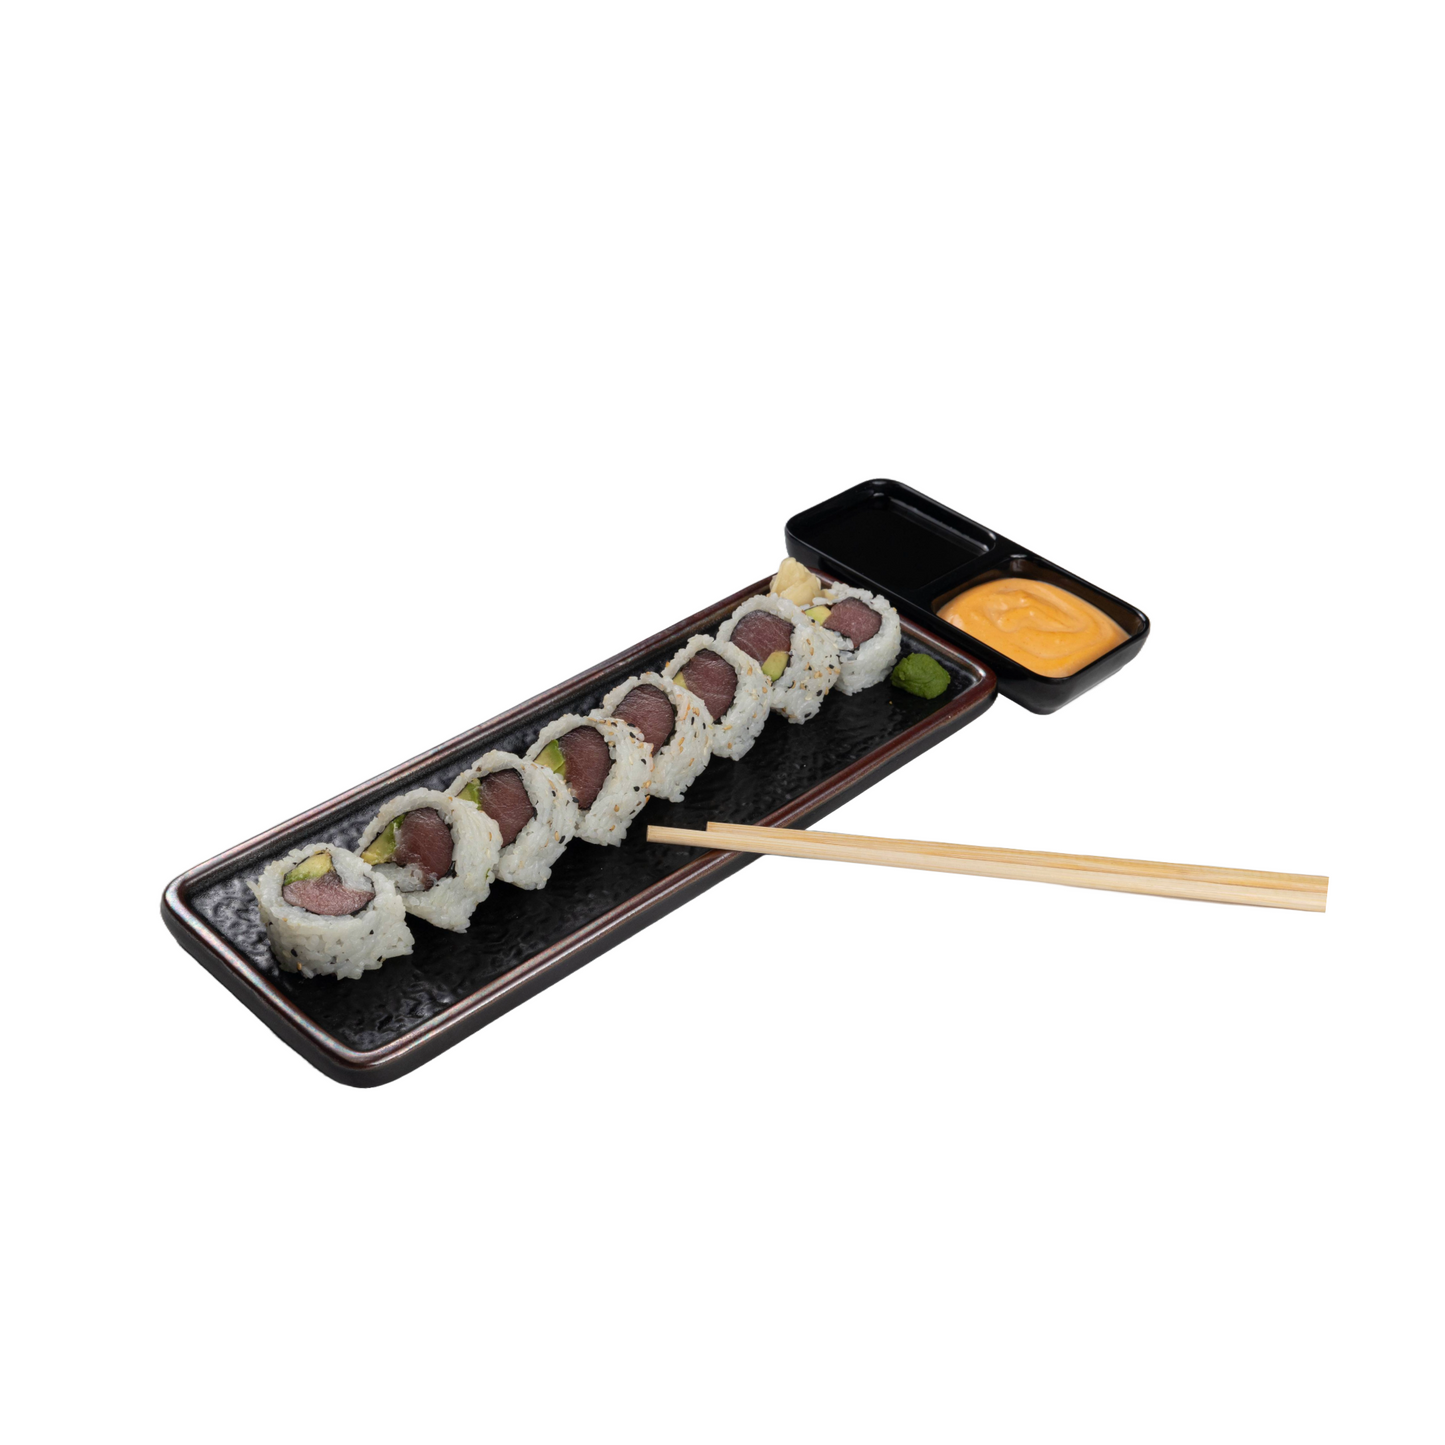 Sushi Prime Platter -12 rolls 96 pcs